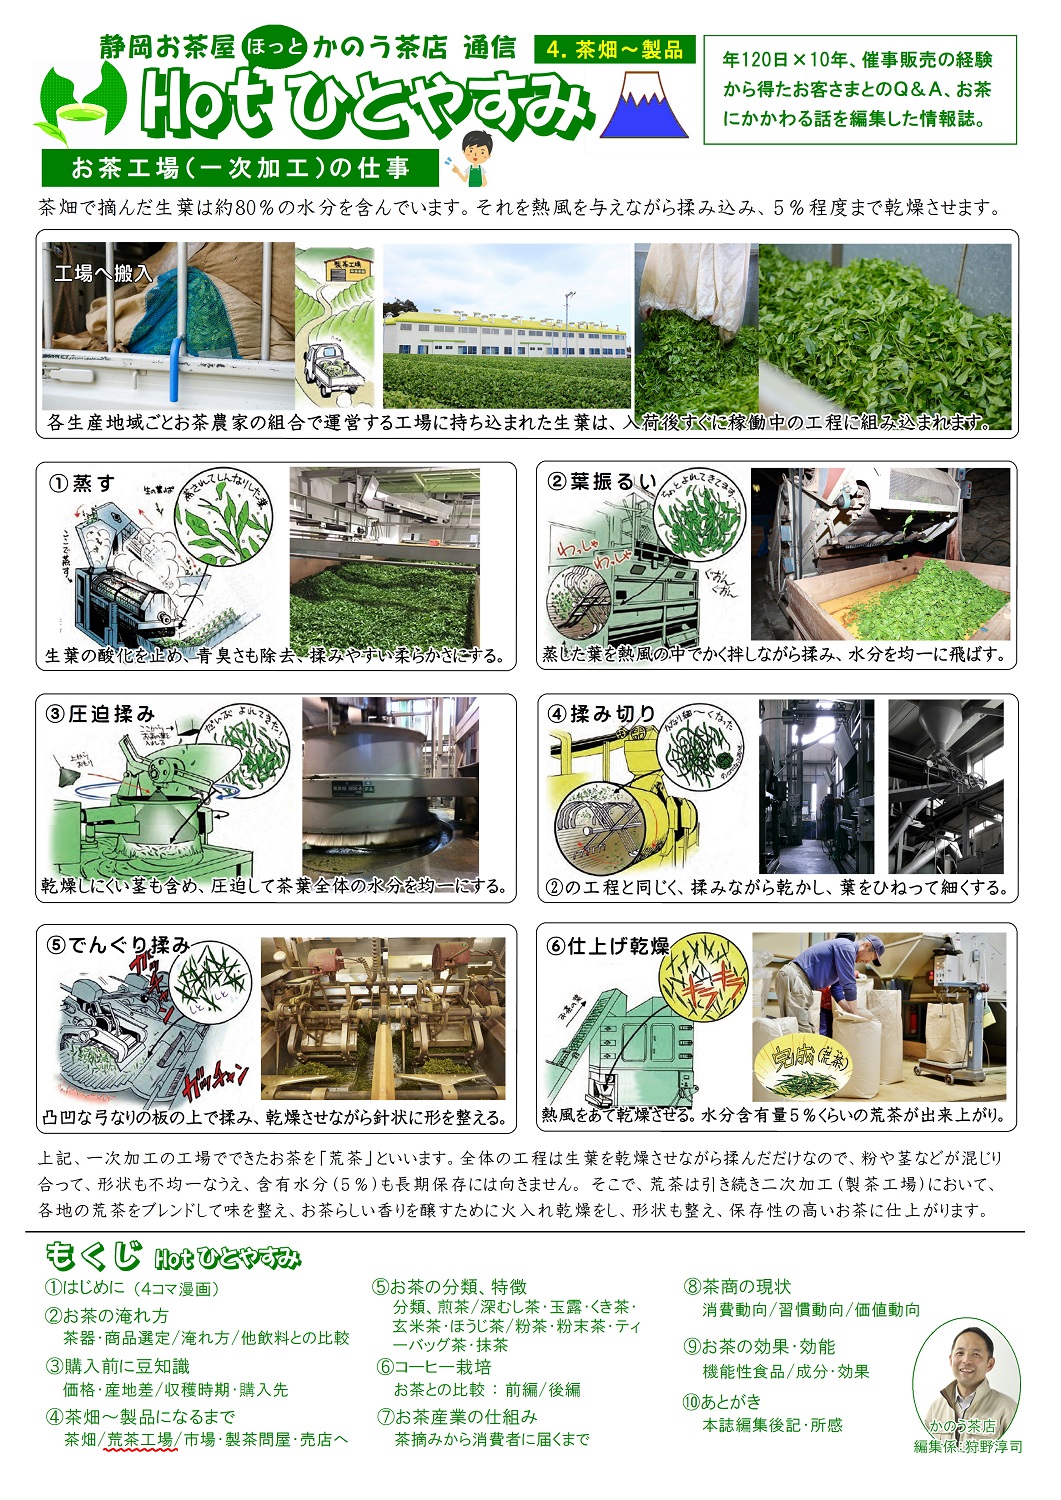 (4)茶畑～製品(荒茶工場)